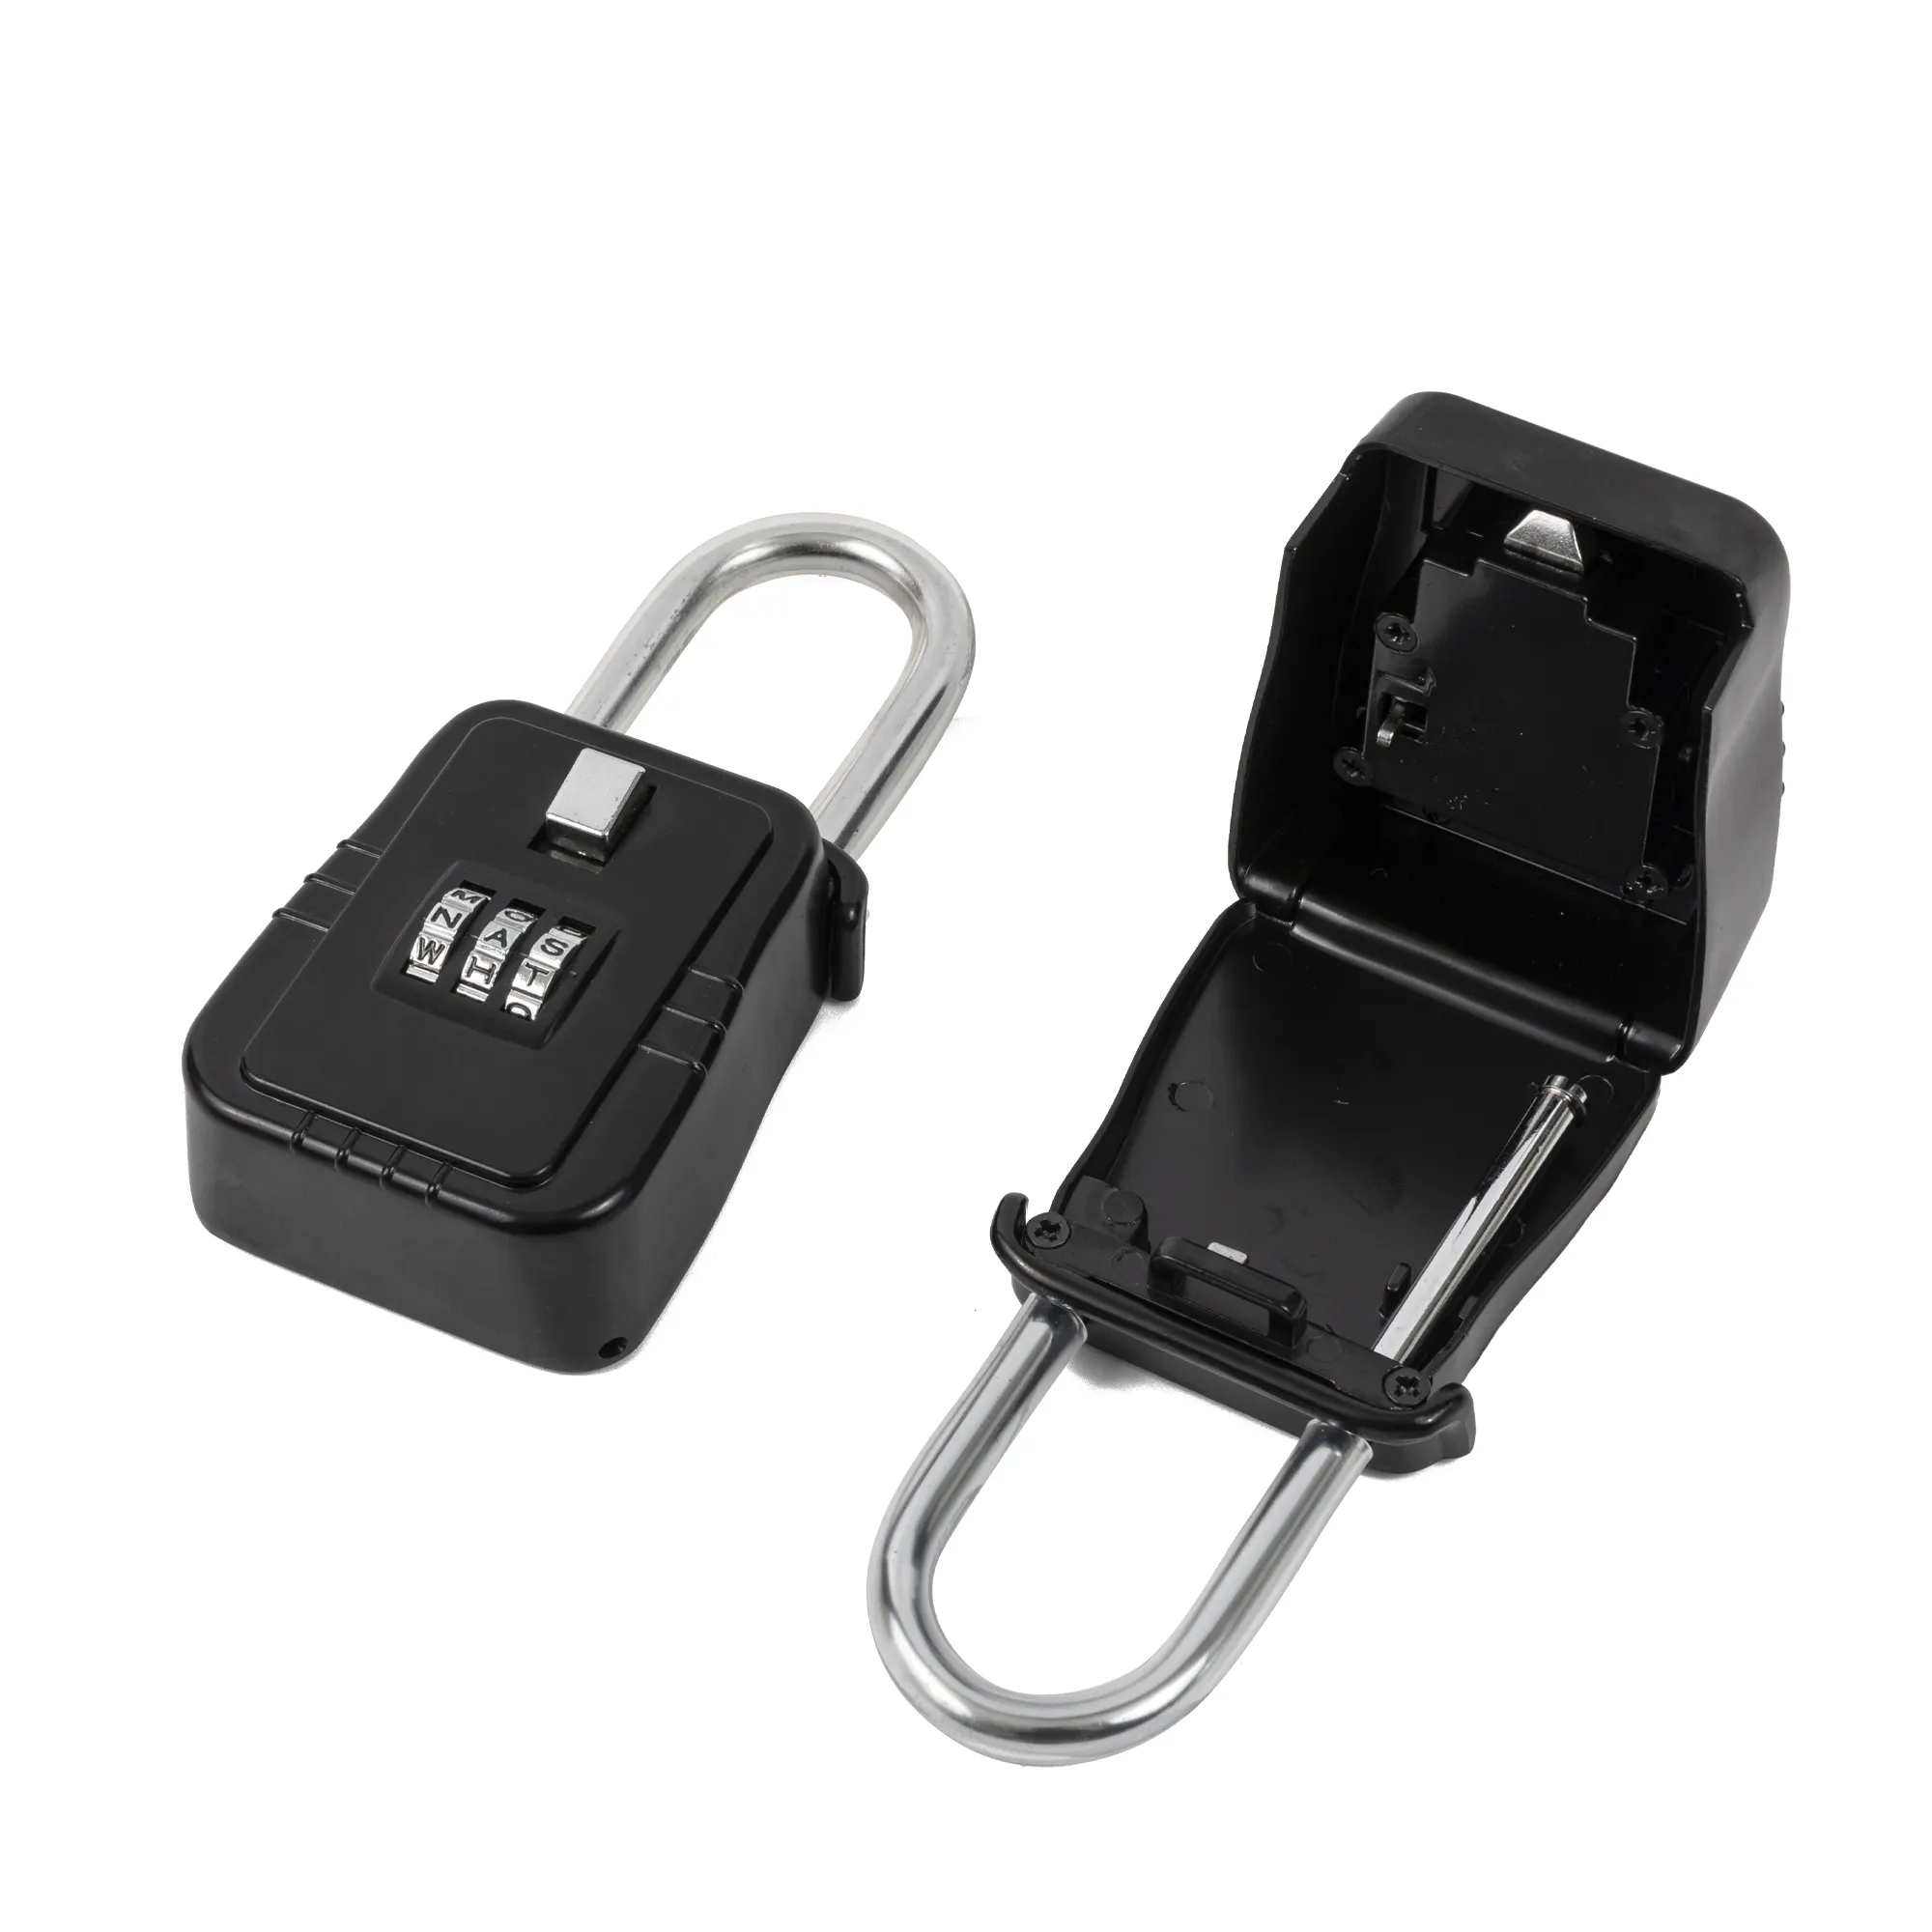 4 الرقمية مخصص خزانة بمفتاح قفل رمز مفتاح قفل حماية مربع تخزين قفل مربع